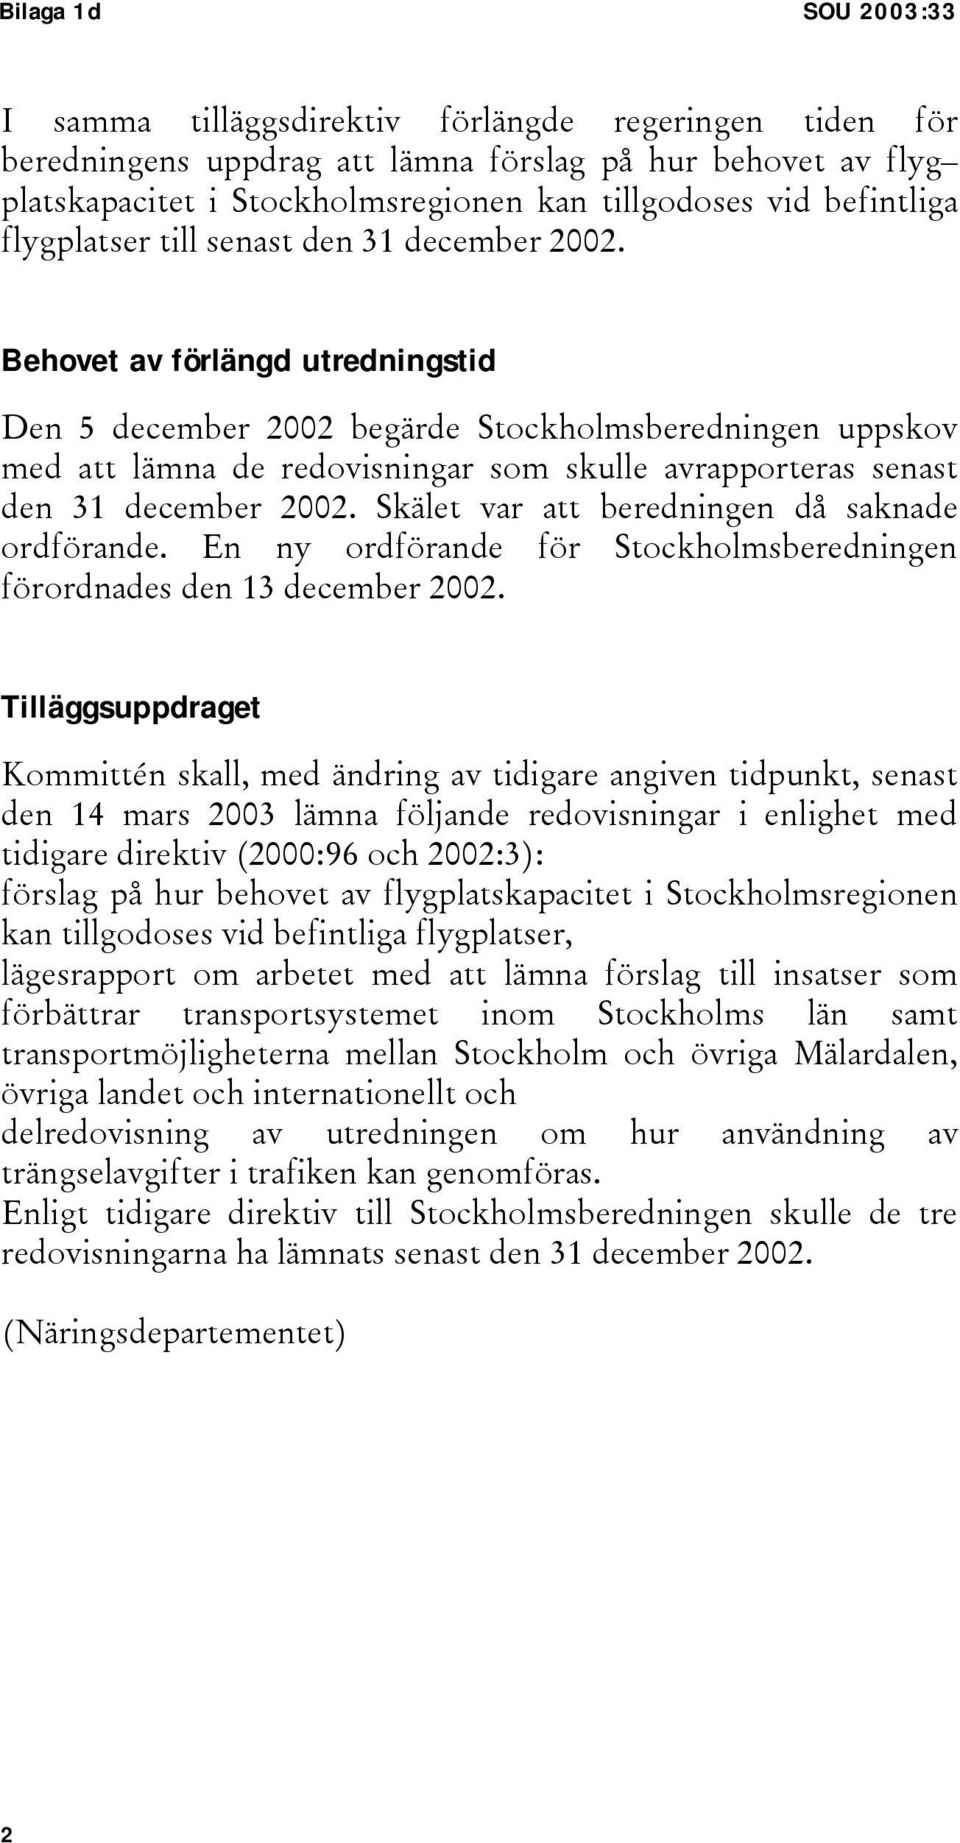 Behovet av förlängd utredningstid Den 5 december 2002 begärde Stockholmsberedningen uppskov med att lämna de redovisningar som skulle avrapporteras senast den 31 december 2002.